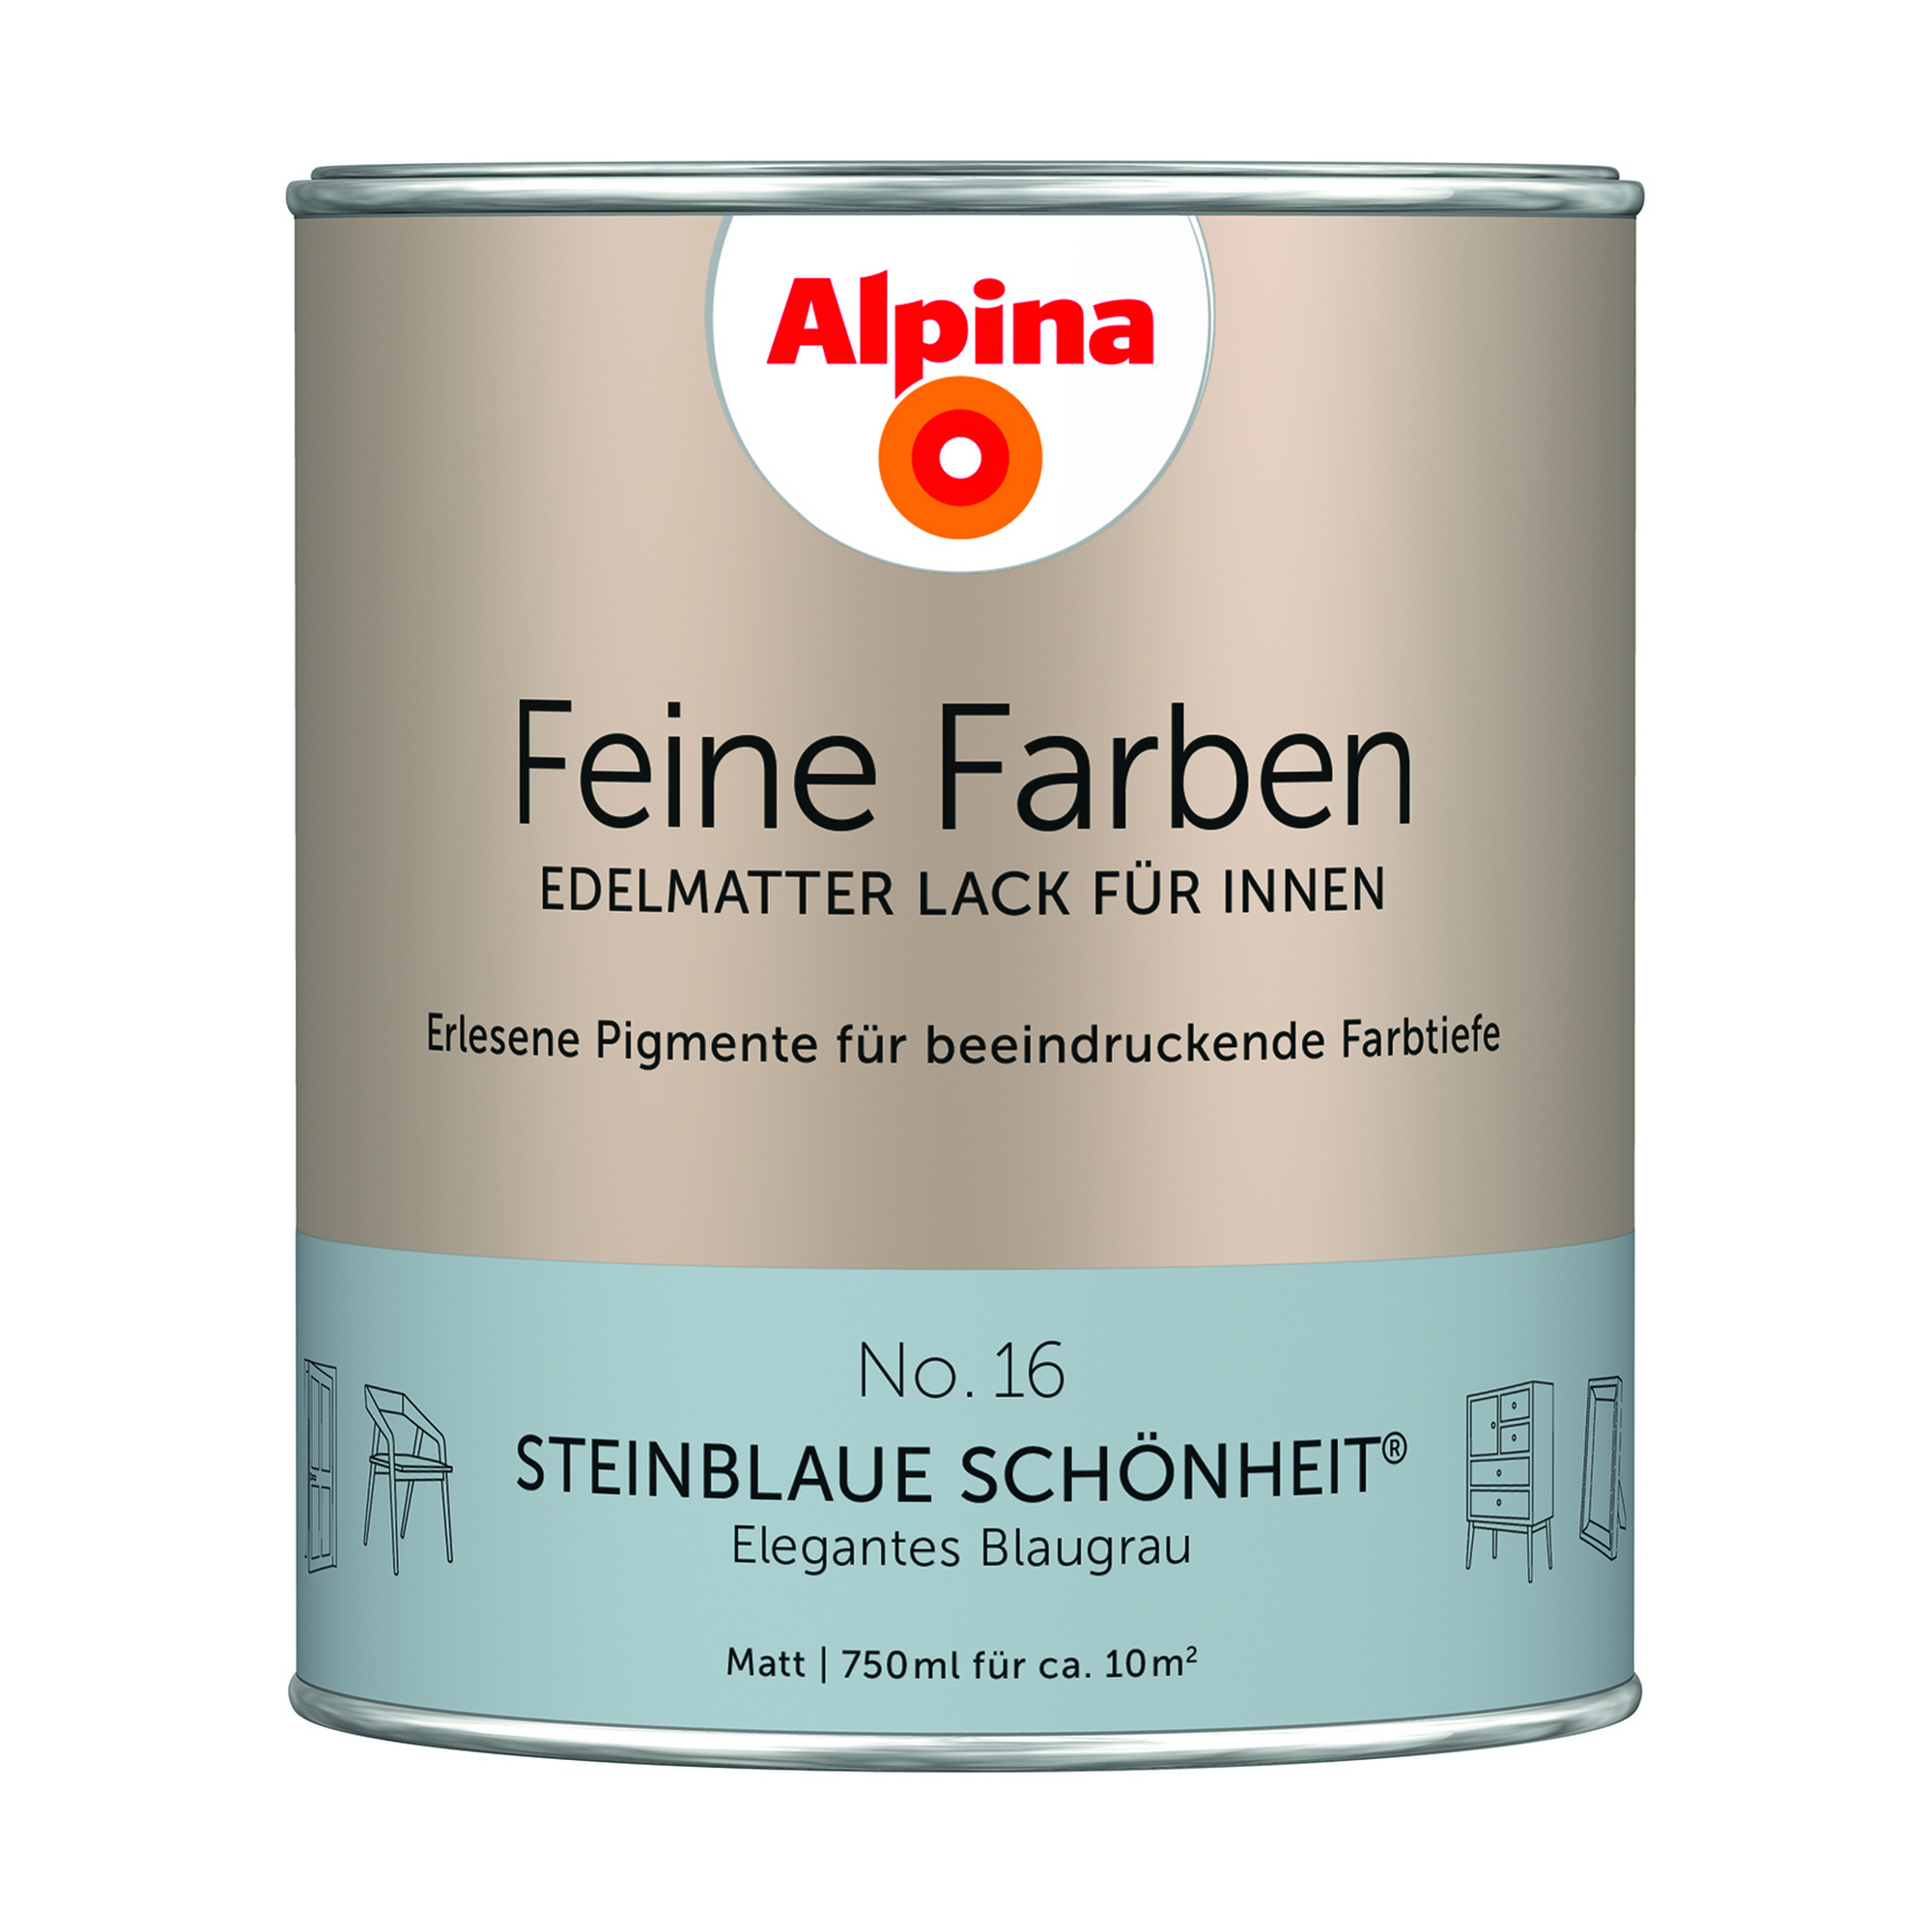 Feine Farben 'Steinblaue Schönheit' blaugrau matt 750 ml + product picture